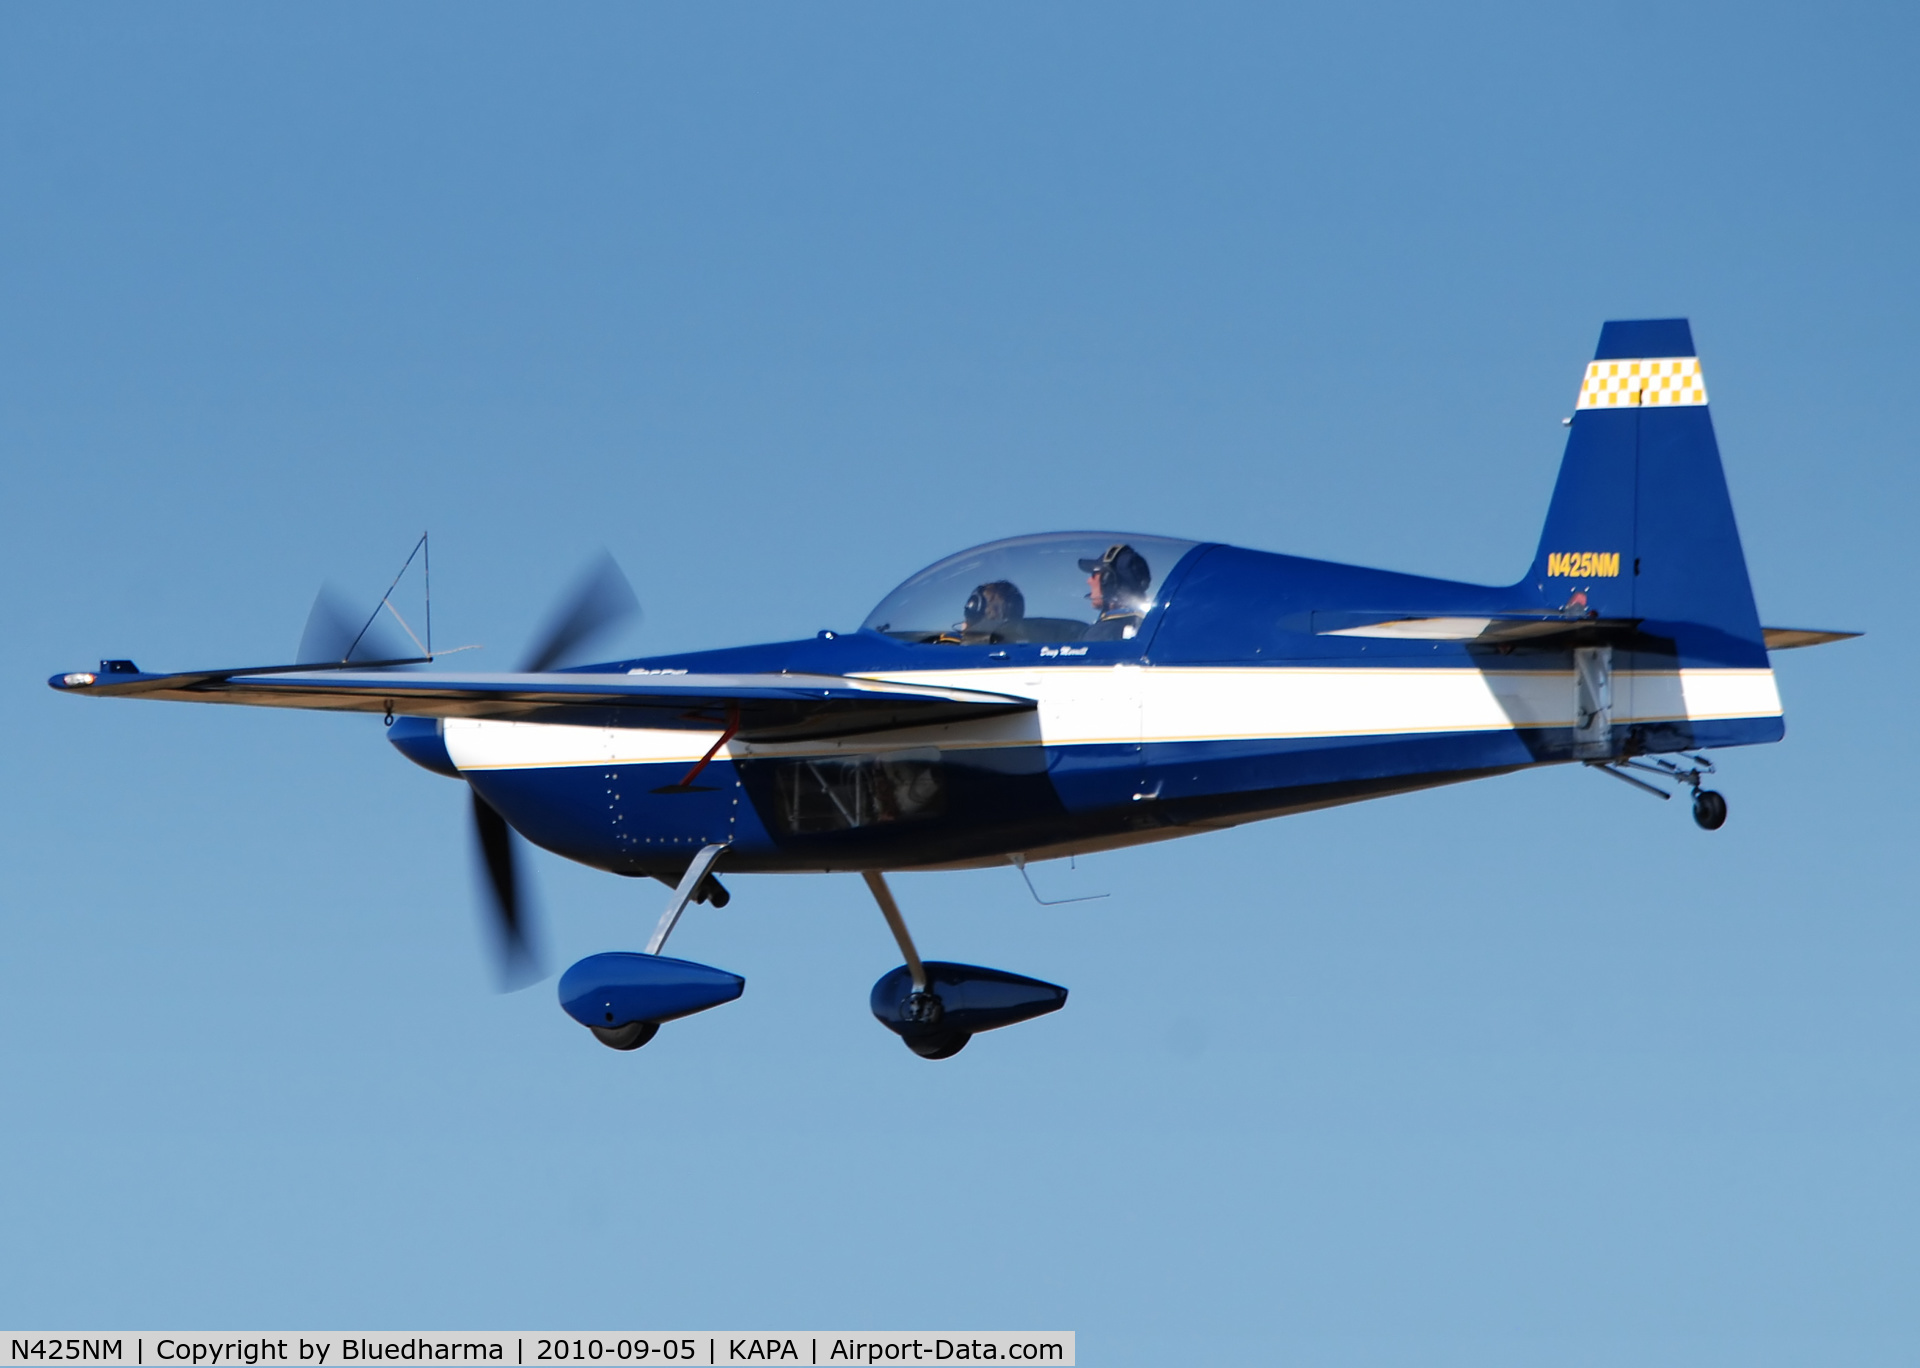 N425NM, 2000 Zivko Edge 540-T C/N 0011, Landing 17L.